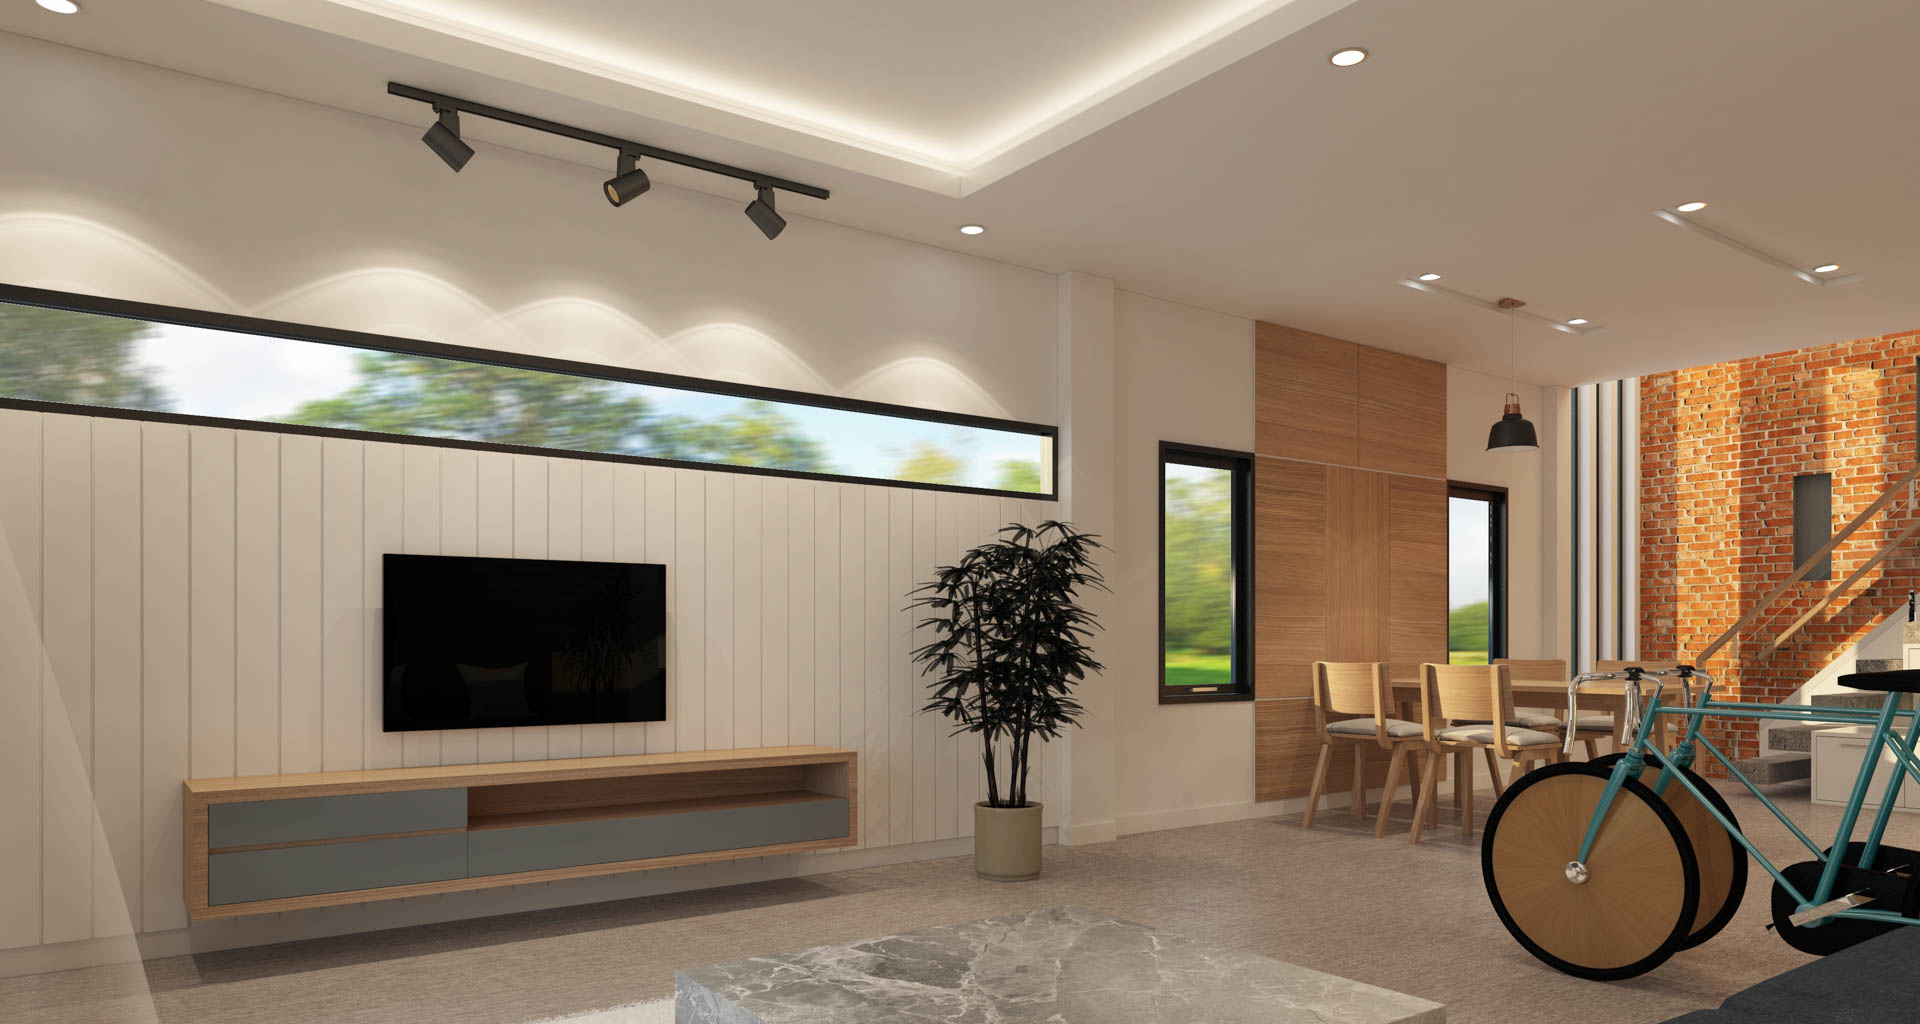 Optimal Led Lighting, What Led Lighting Is Best For Living Room